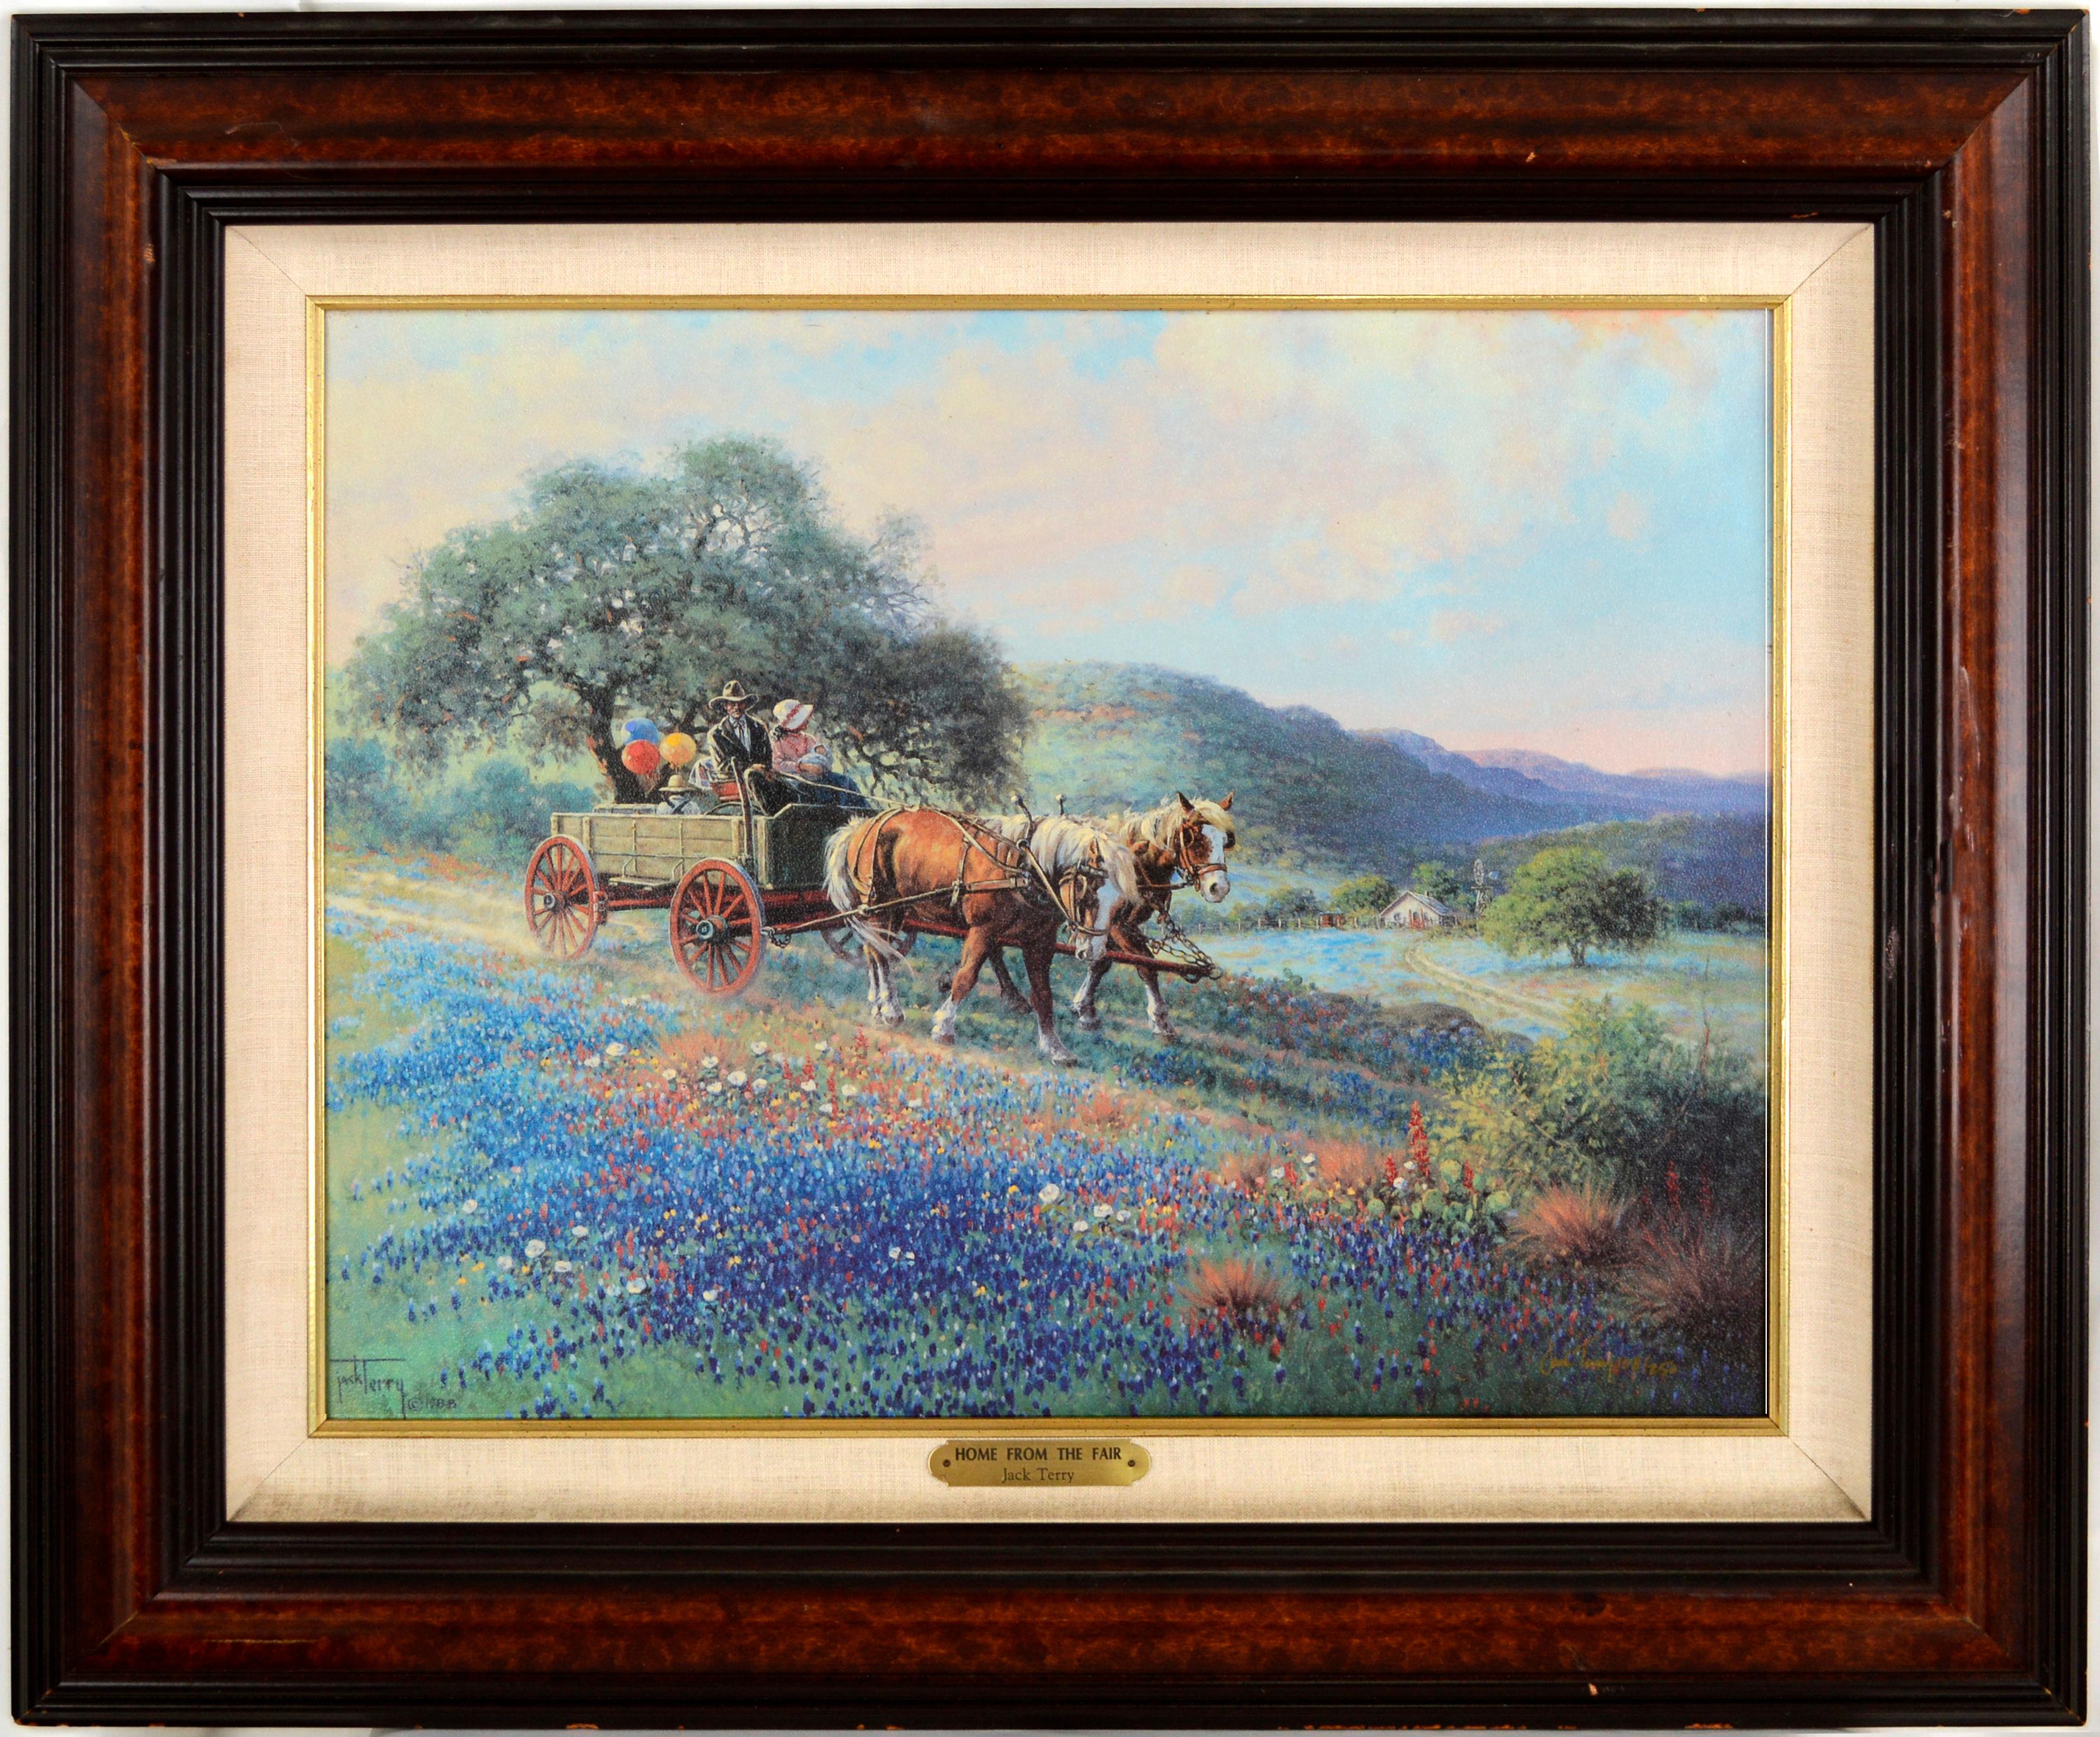 « Home from the Fair » - Impression de wagons et de chevaux sur toile